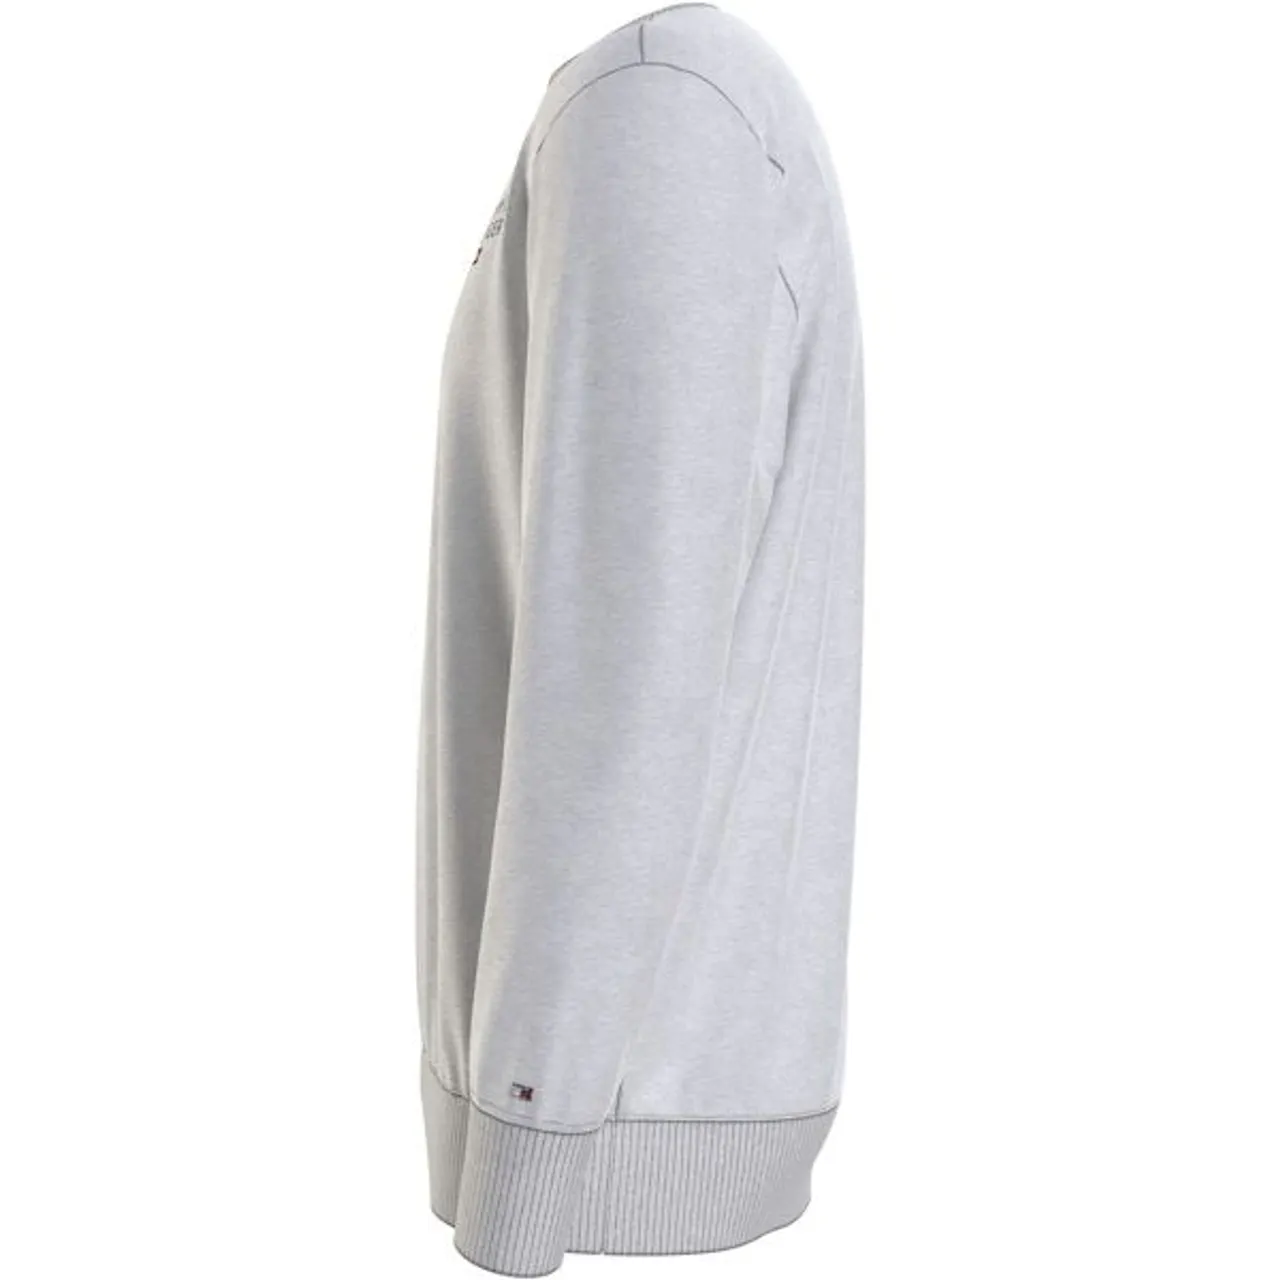 Sweatshirt TOMMY HILFIGER UNDERWEAR "TRACK TOP HWK" Gr. M (50), grau (ice grey heather) Herren Sweatshirts